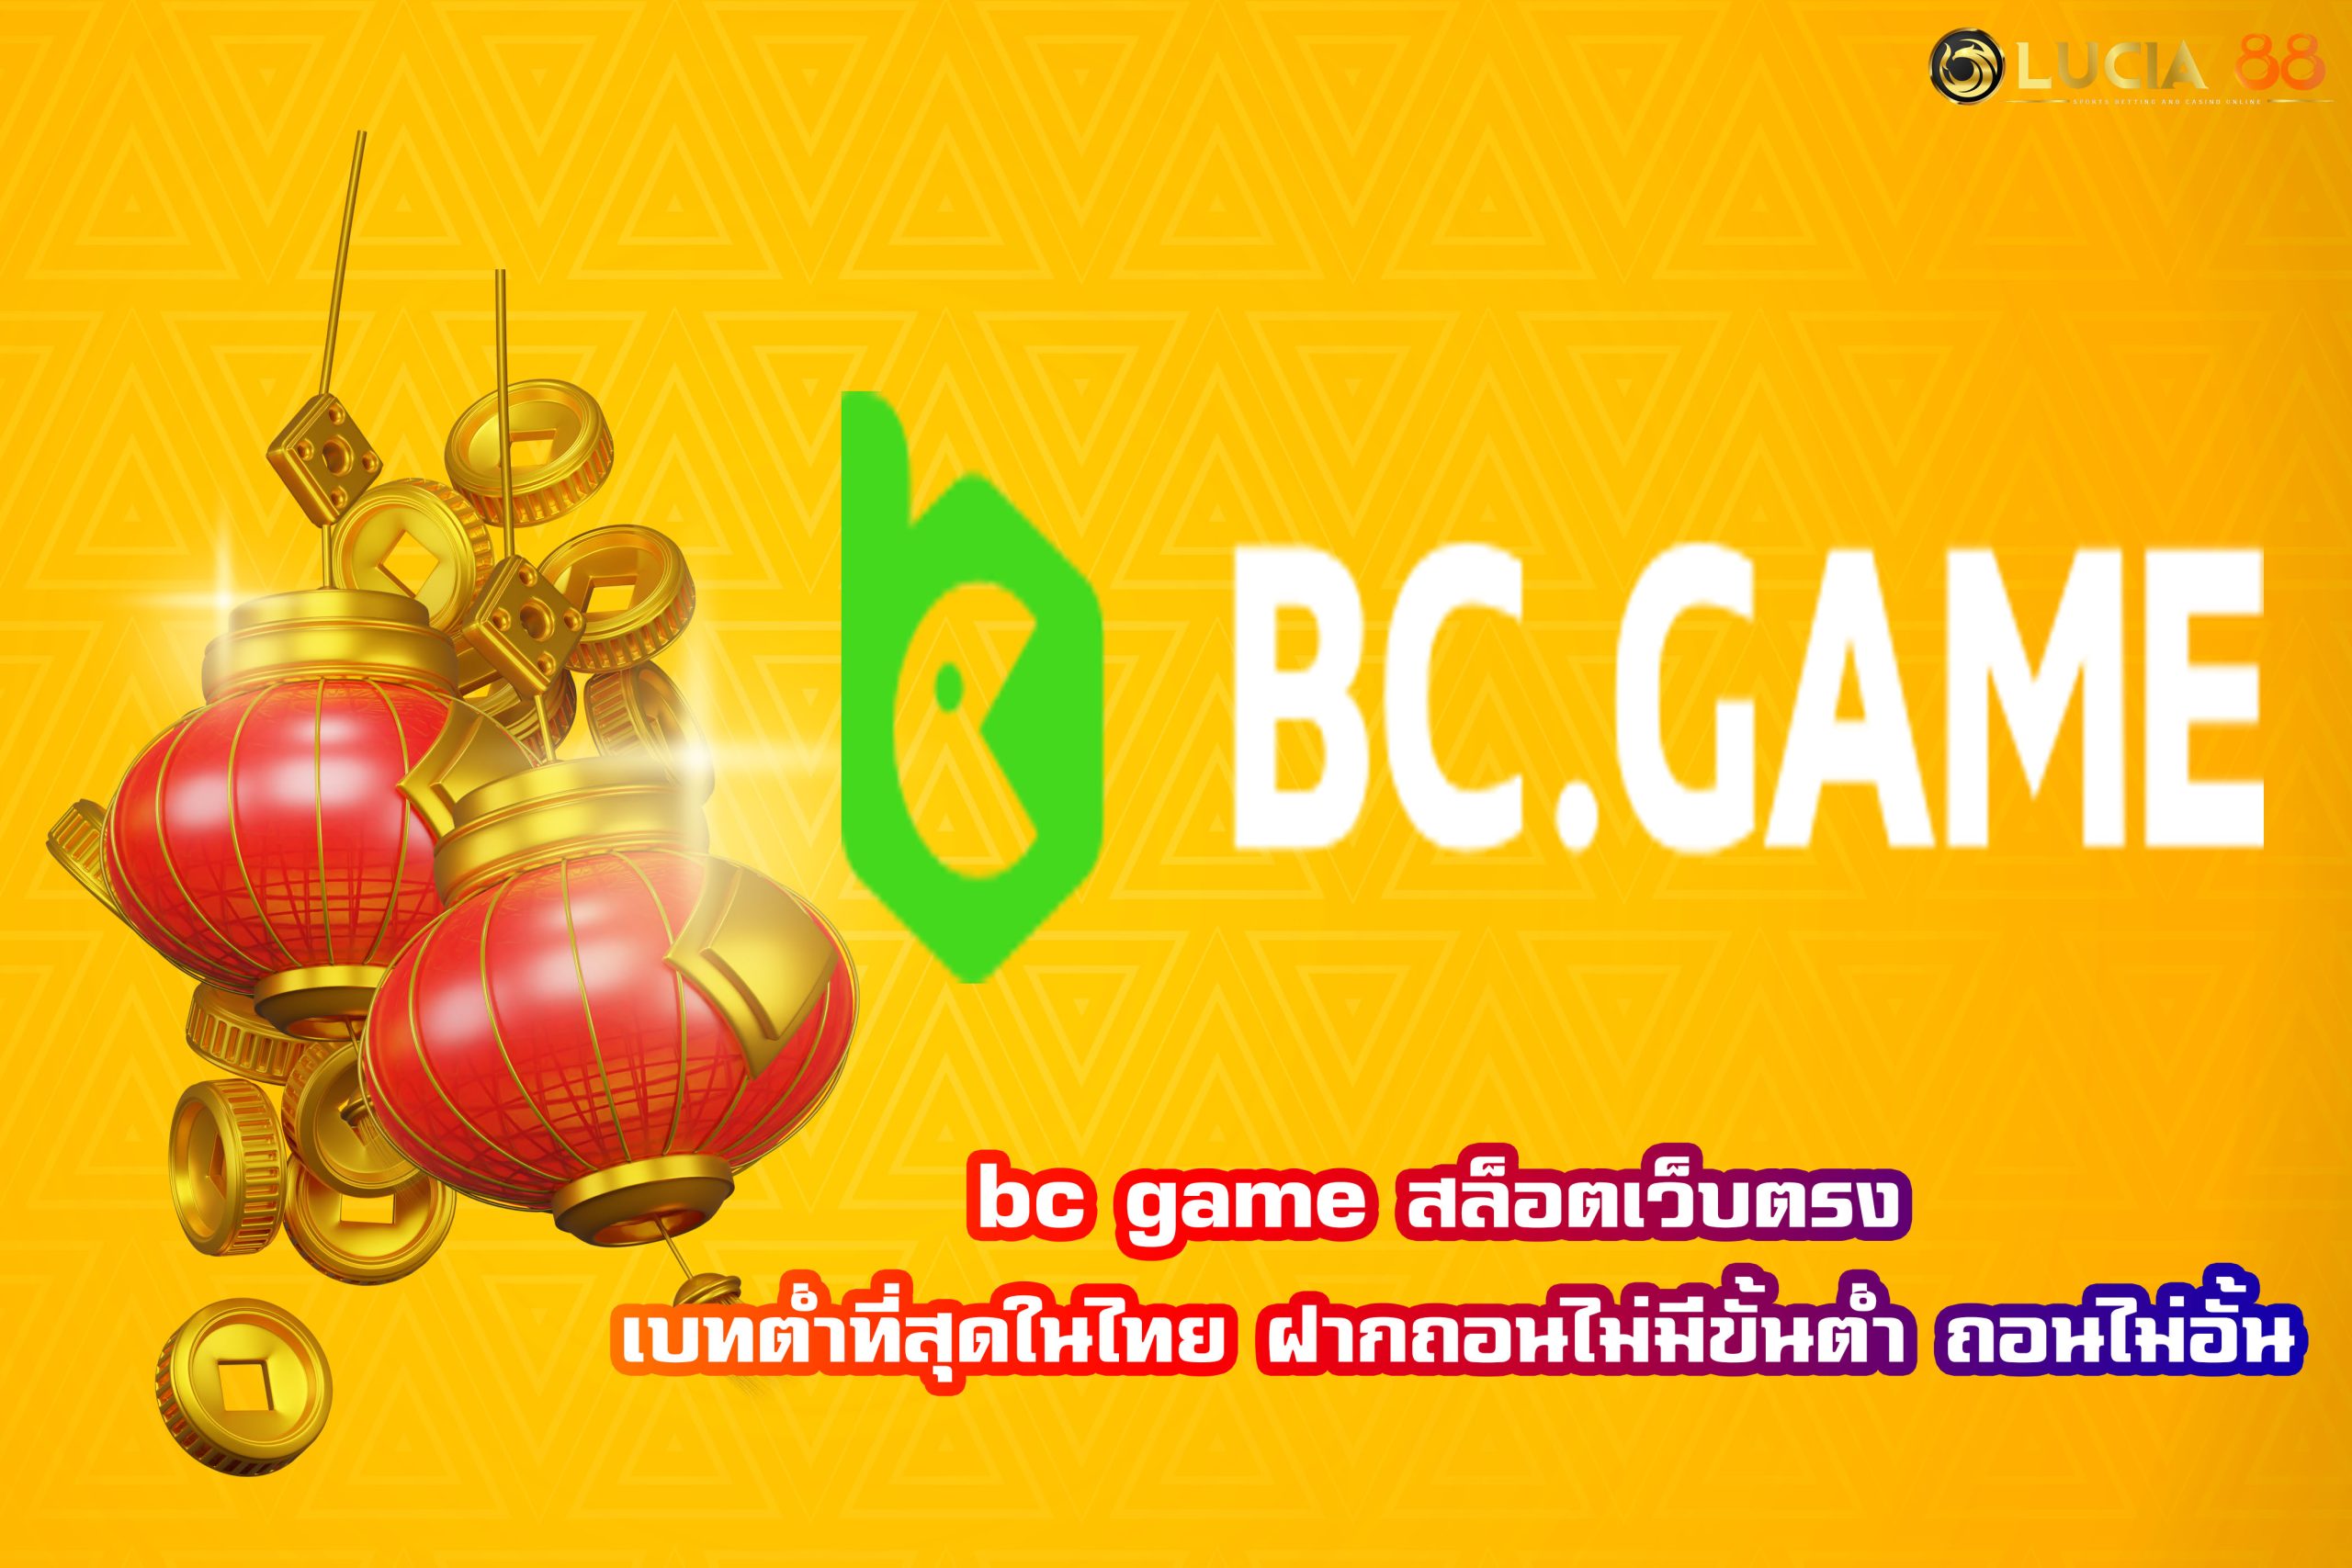 bc game สล็อตเว็บตรง เบทต่ำที่สุดในไทย ฝากถอนไม่มีขั้นต่ำ ถอนไม่อั้น